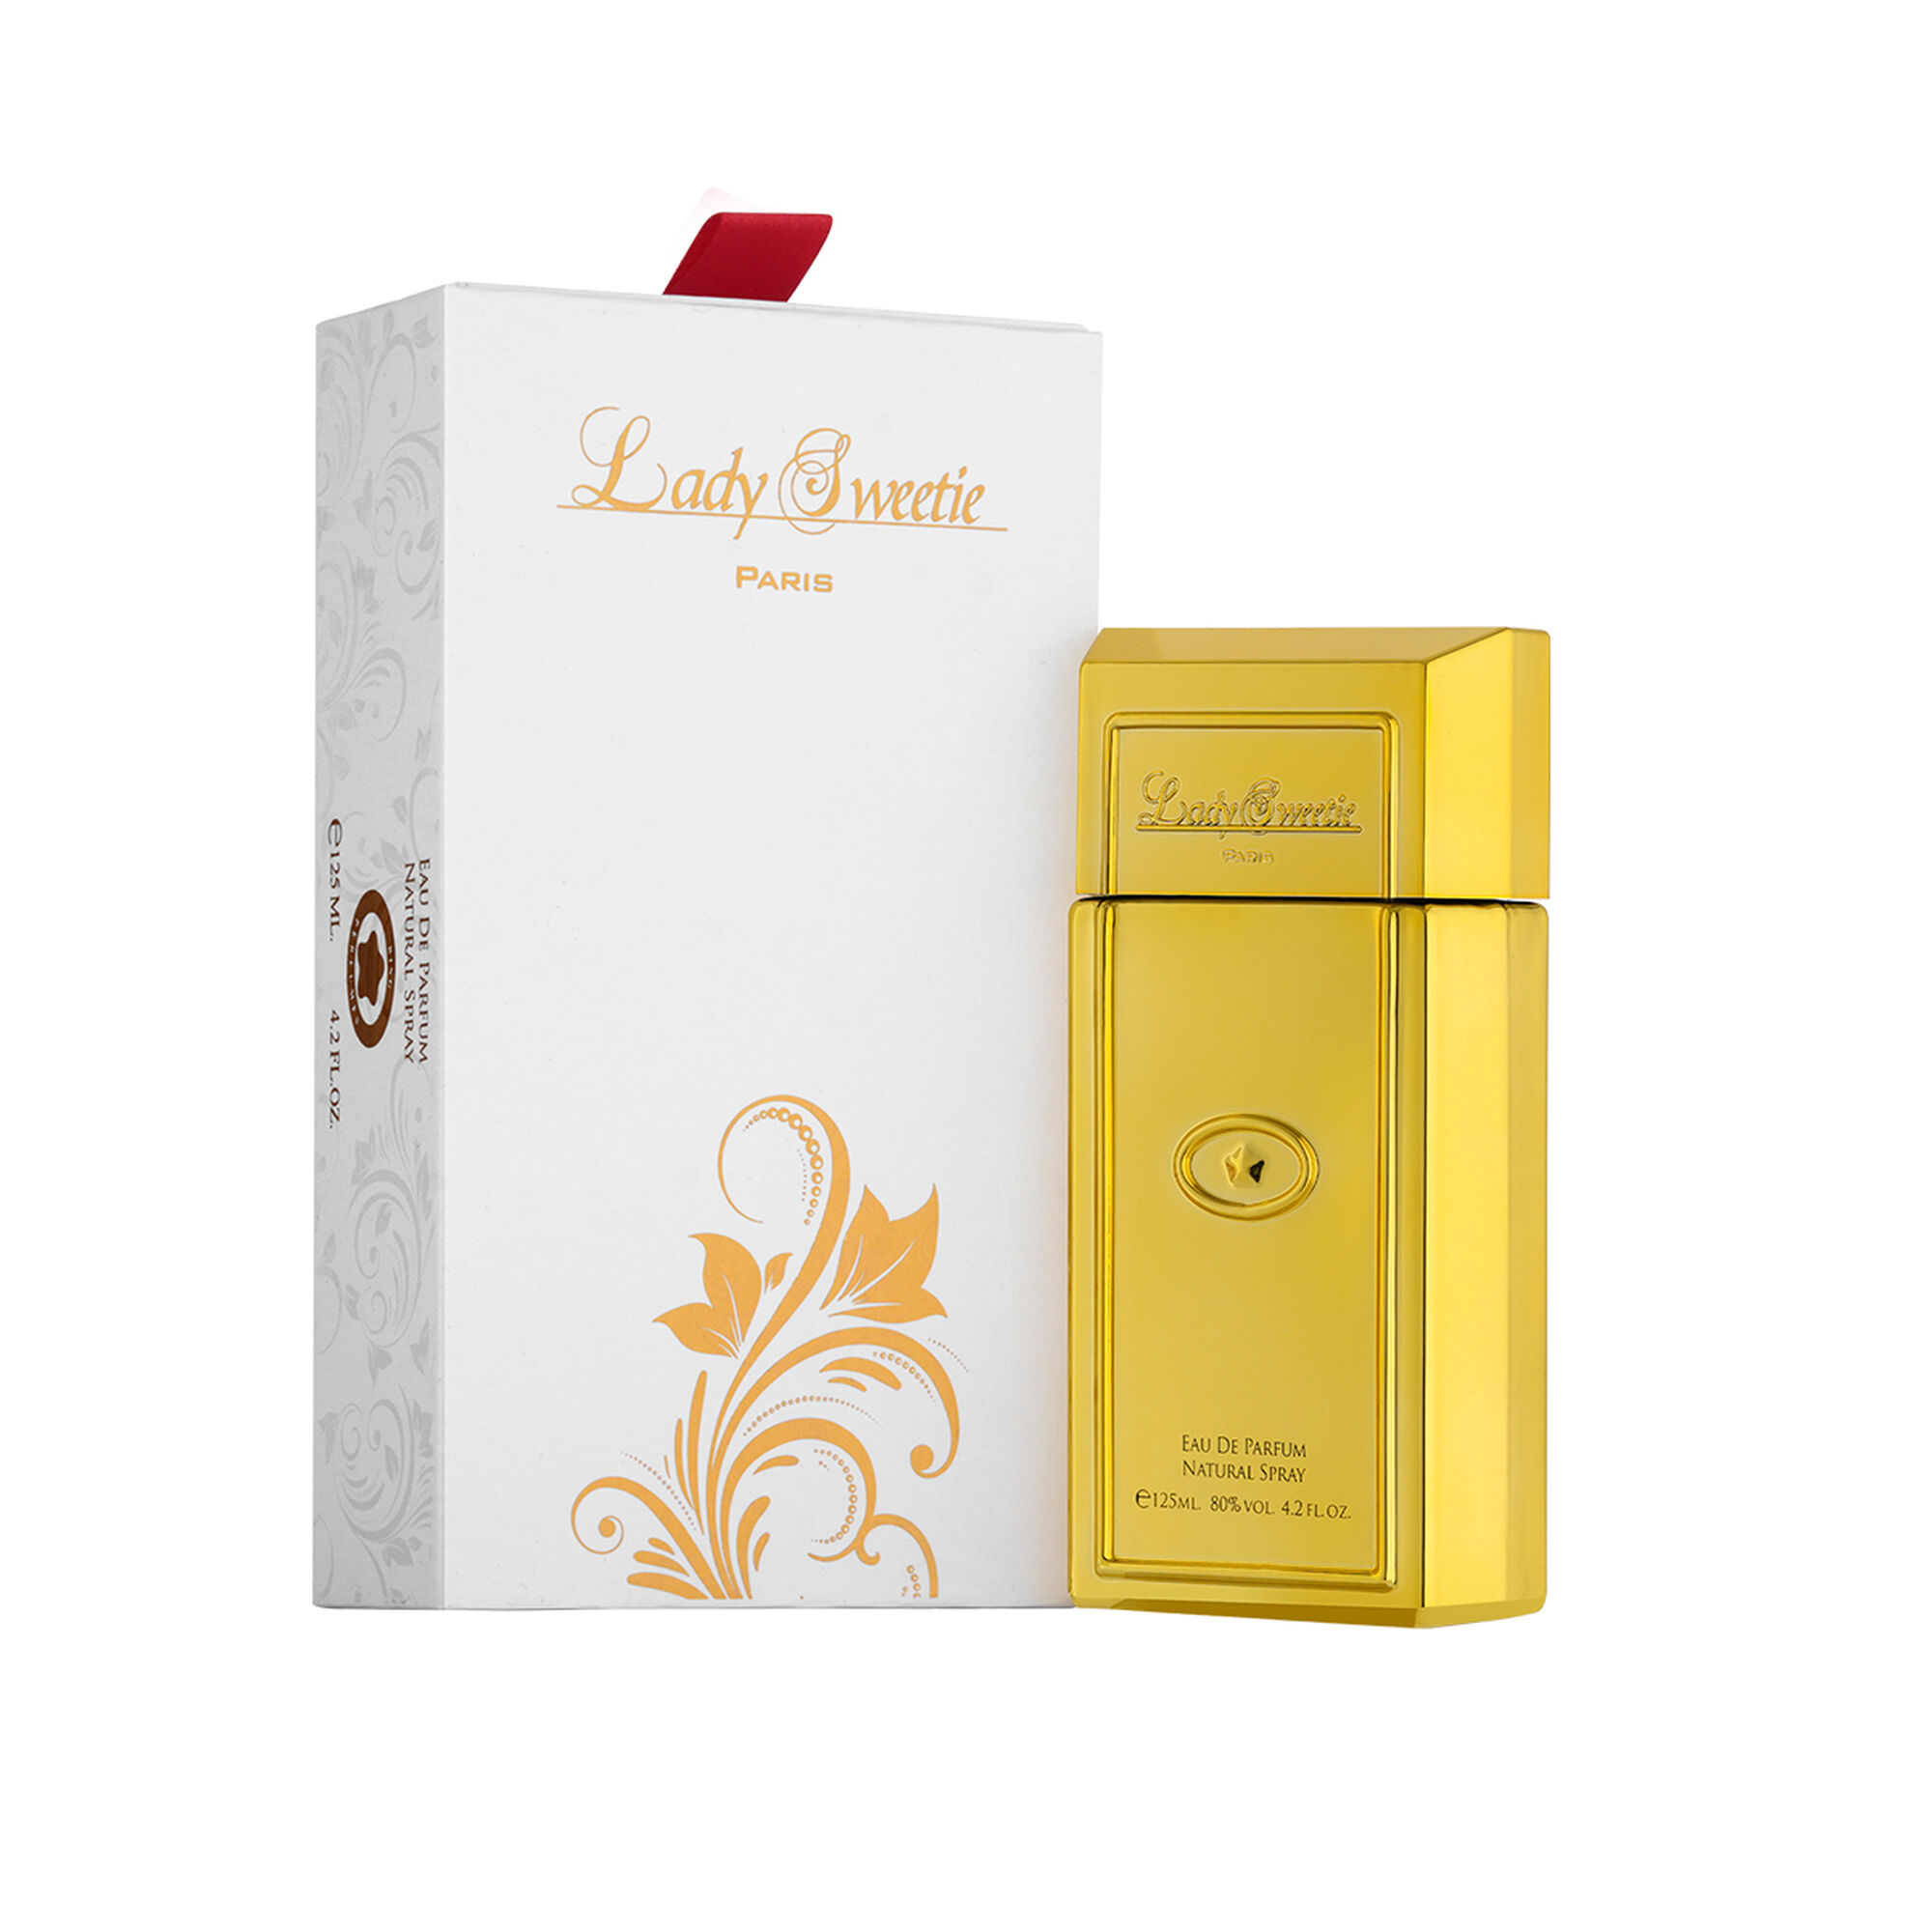 Lady Sweetie Eau de Parfum 125 ml